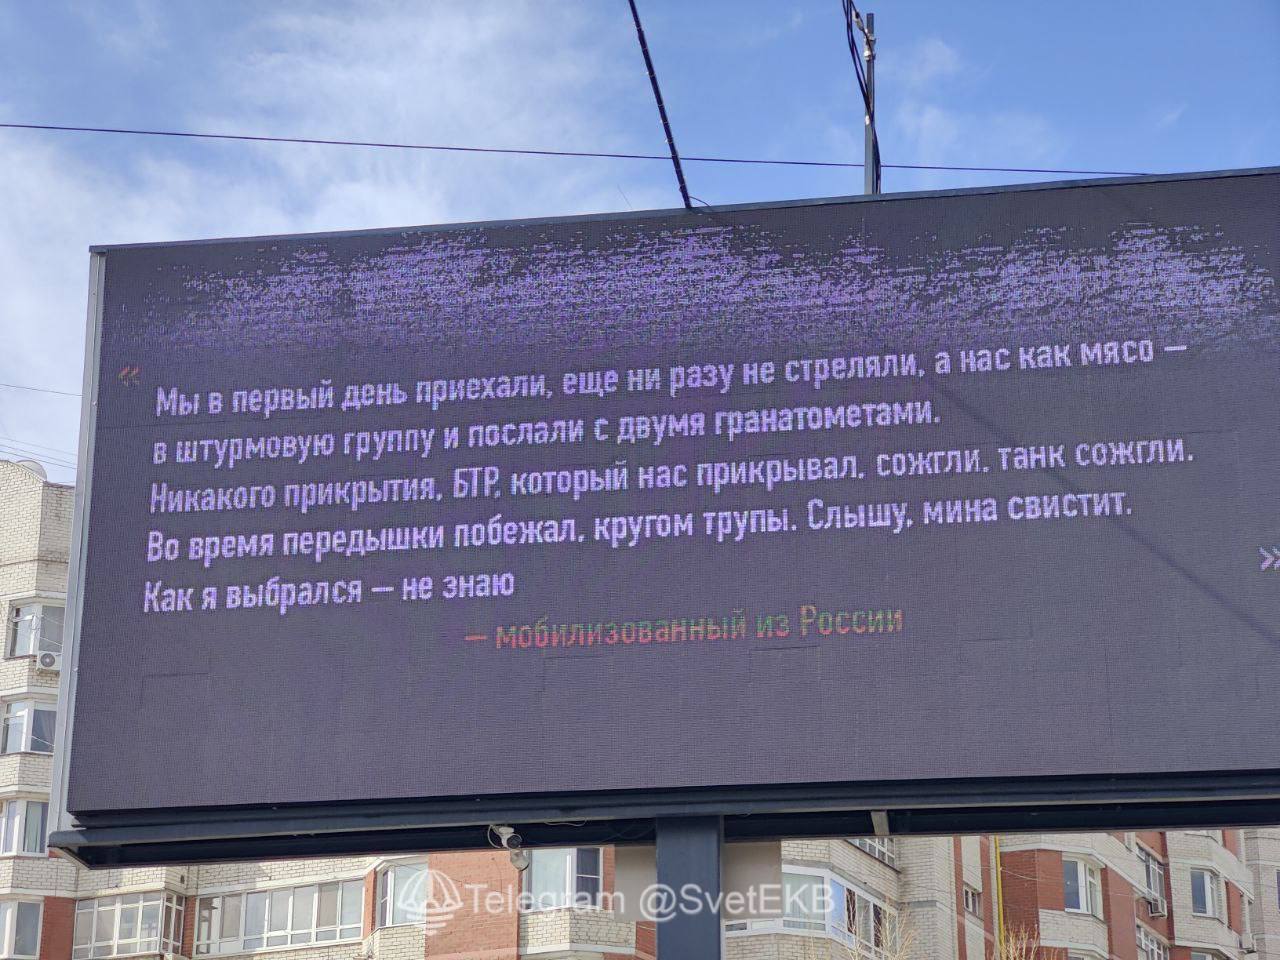 "Нас кинули як м'ясо, без прикриття": у Росії з'явилися рекламні щити з цитатами "мобіків" про реалії війни проти України. Фото